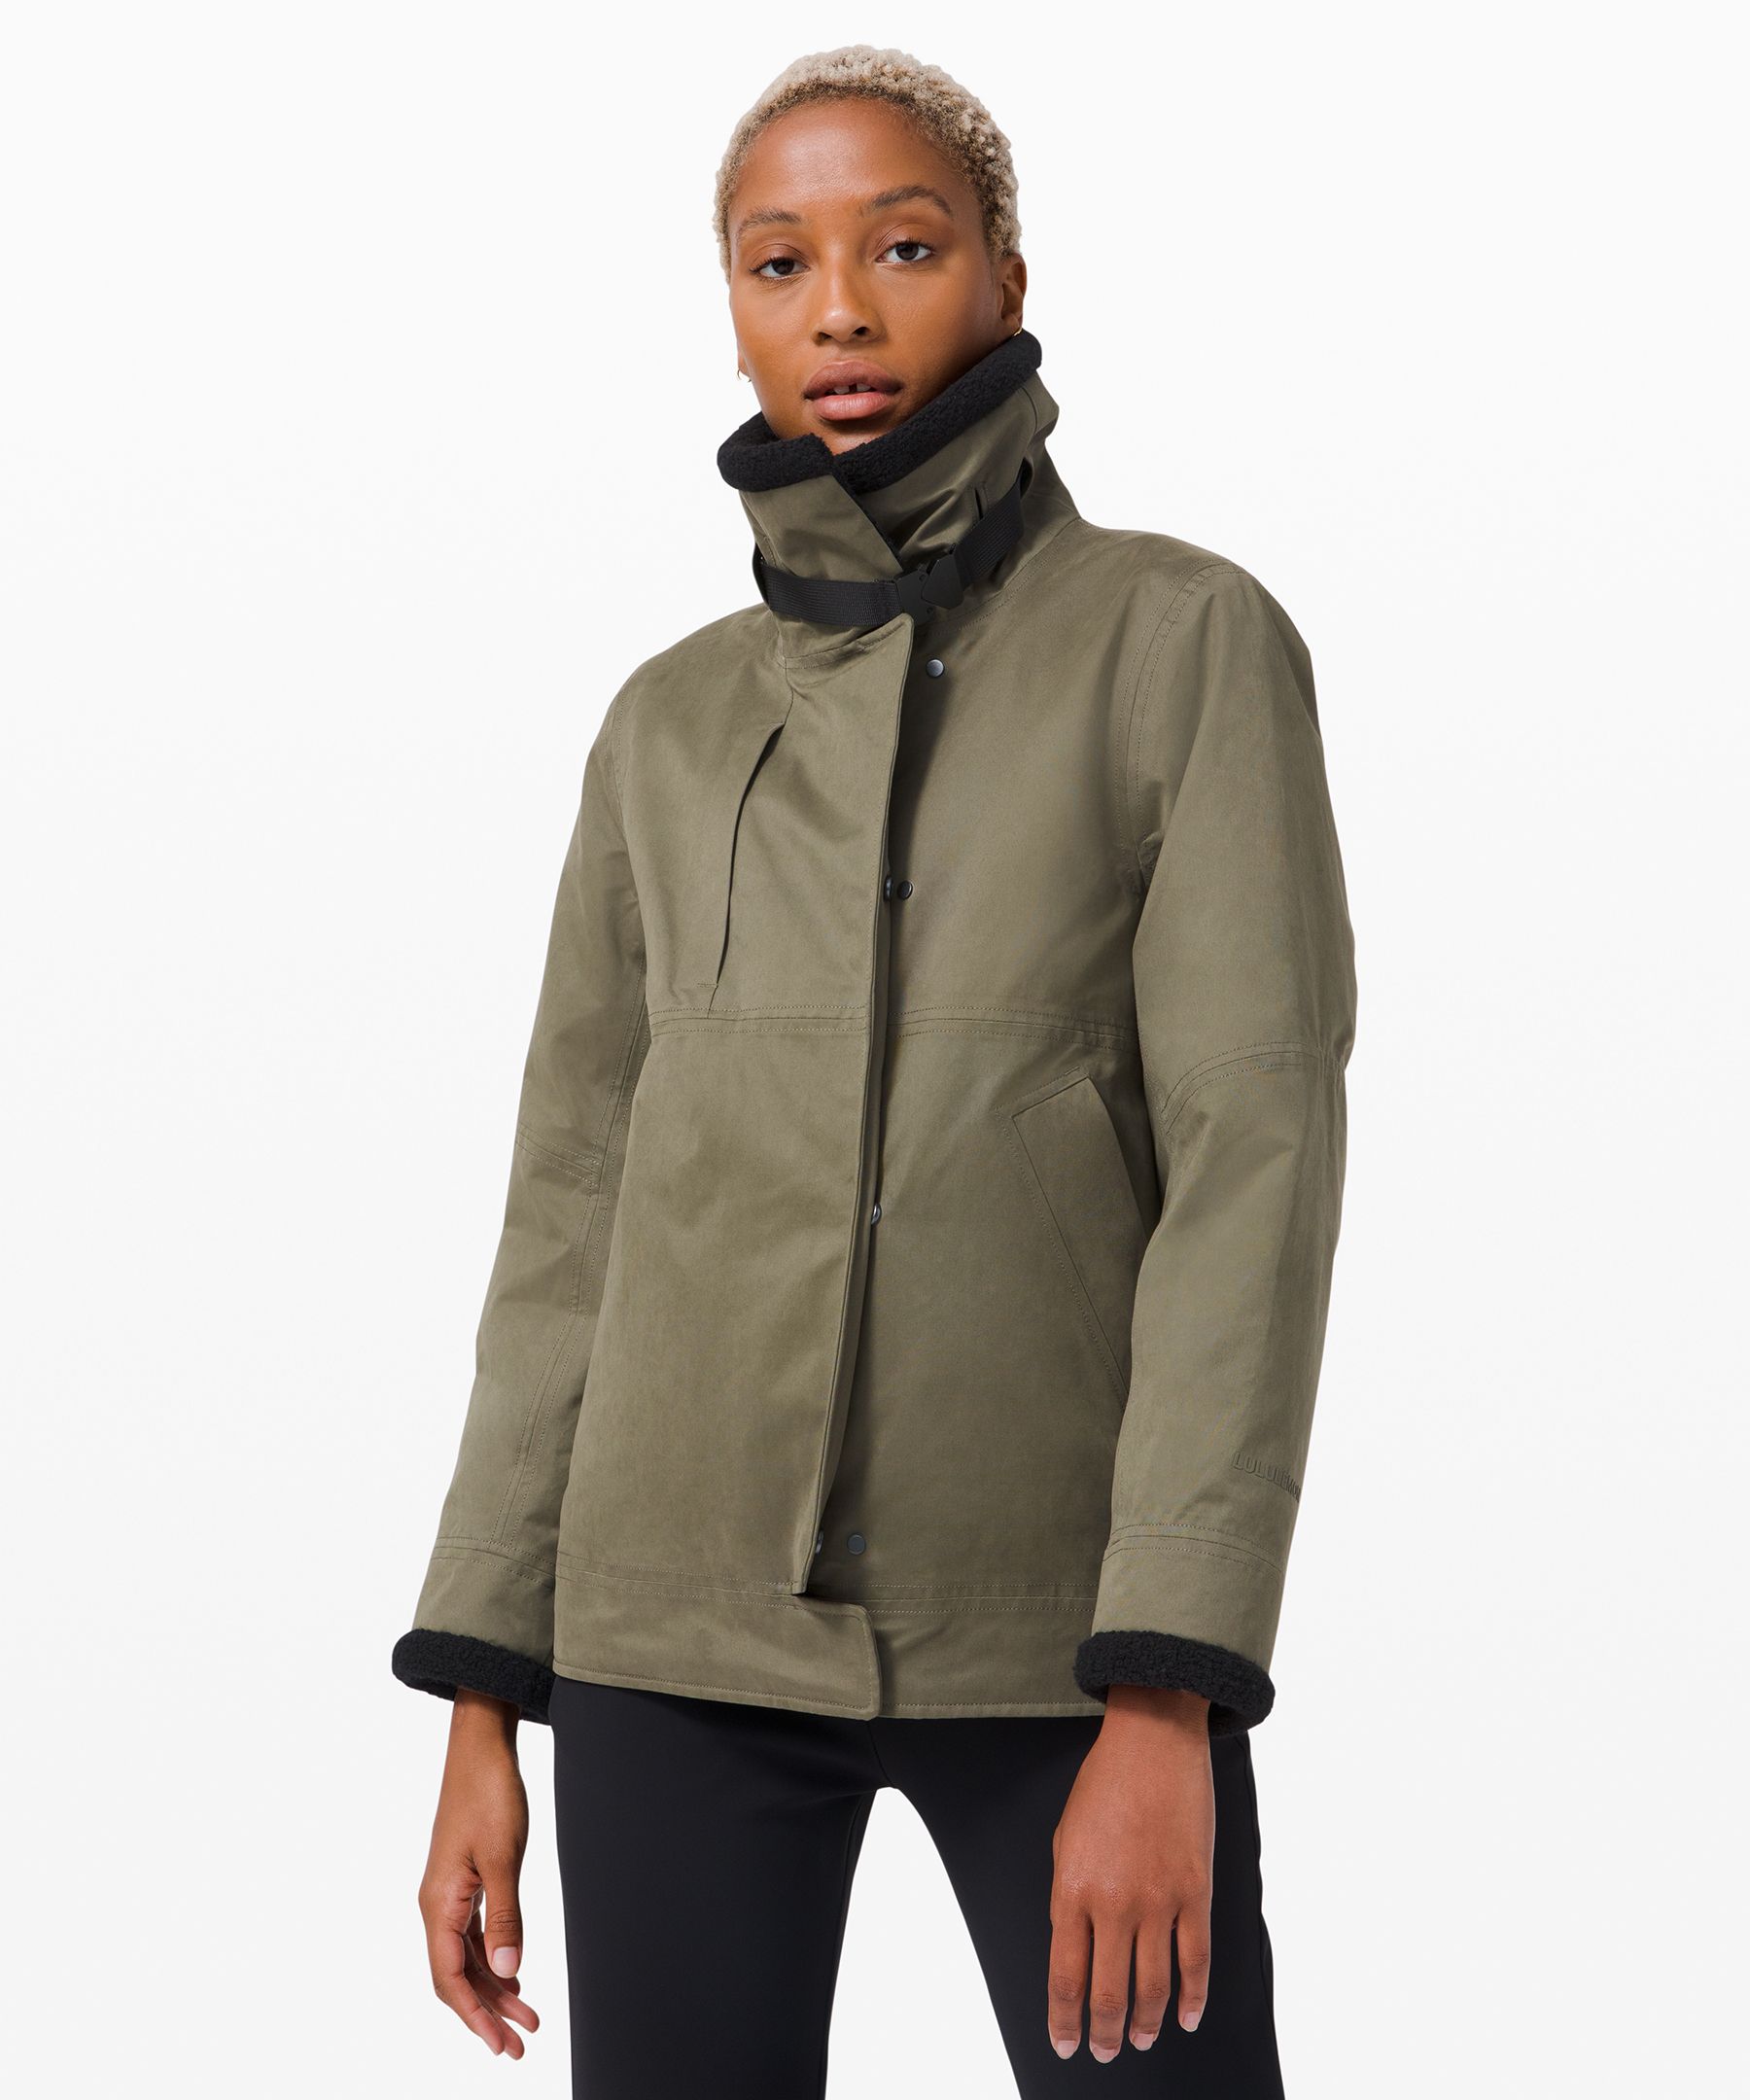 Resolute Warmth Jacket | Coats and Jackets | Lululemon UK